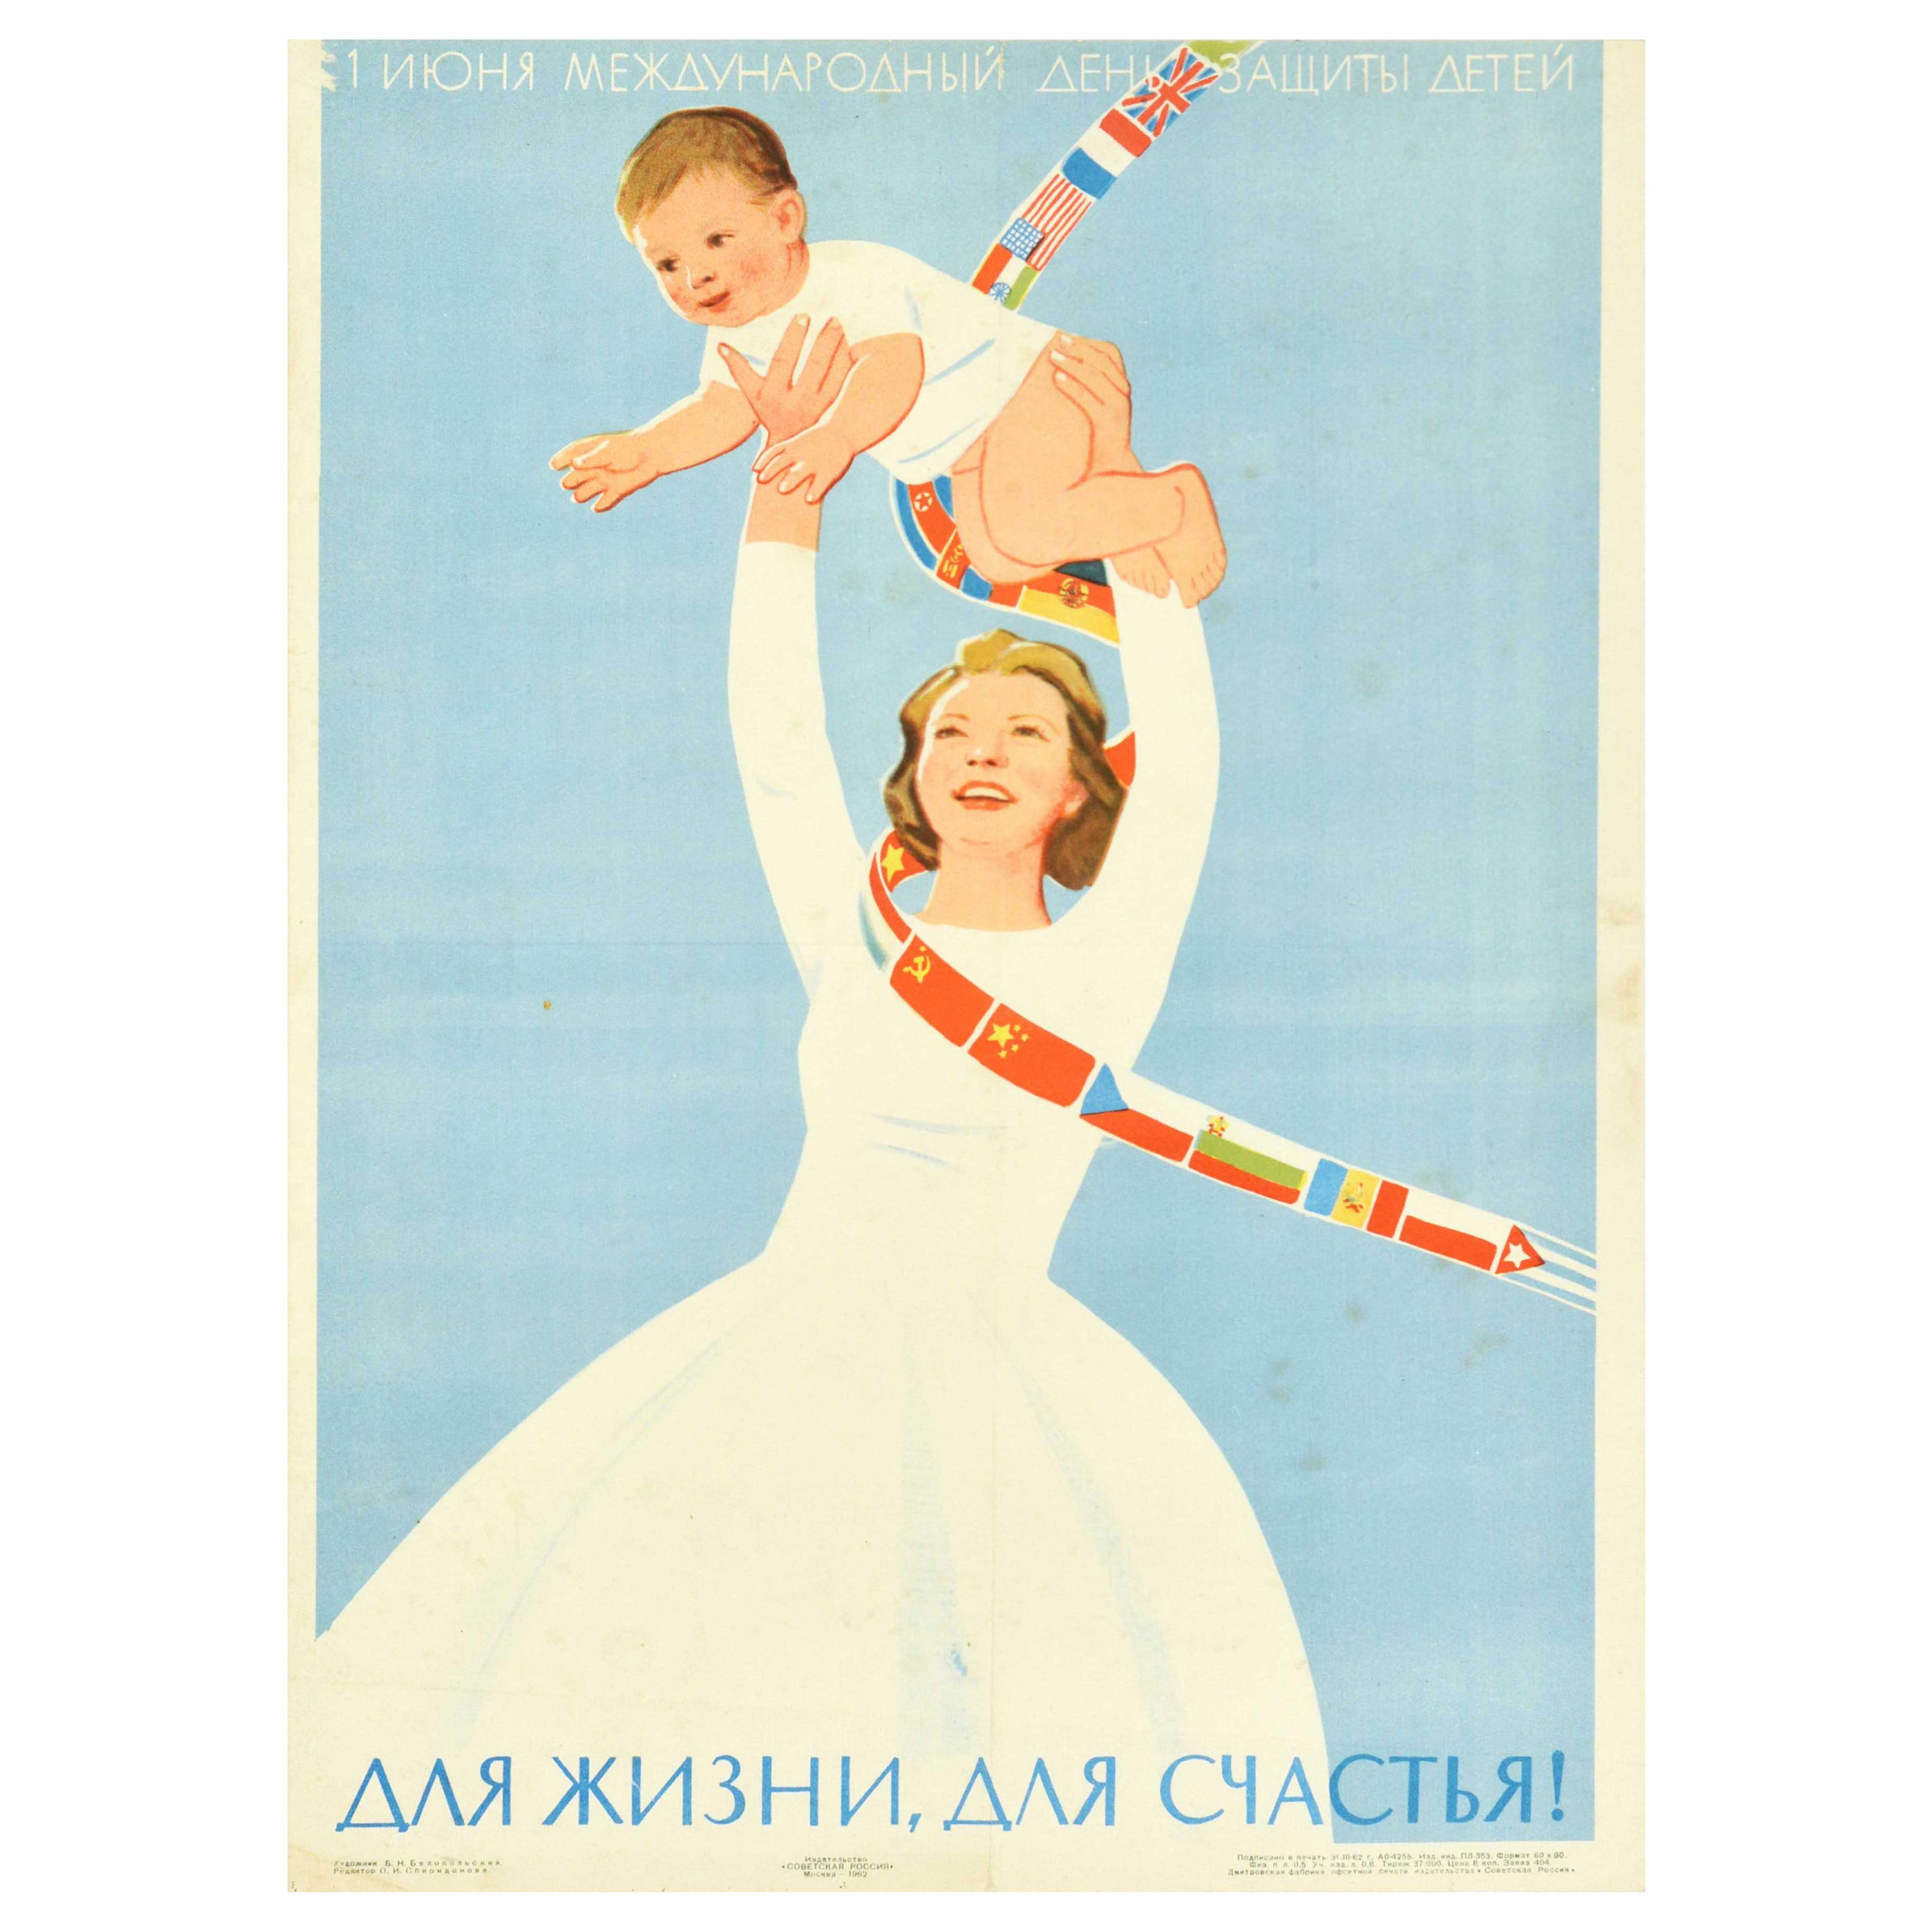 Original Original-Vintage-Poster Internationaler Kindertag für das Leben für Glück UdSSR